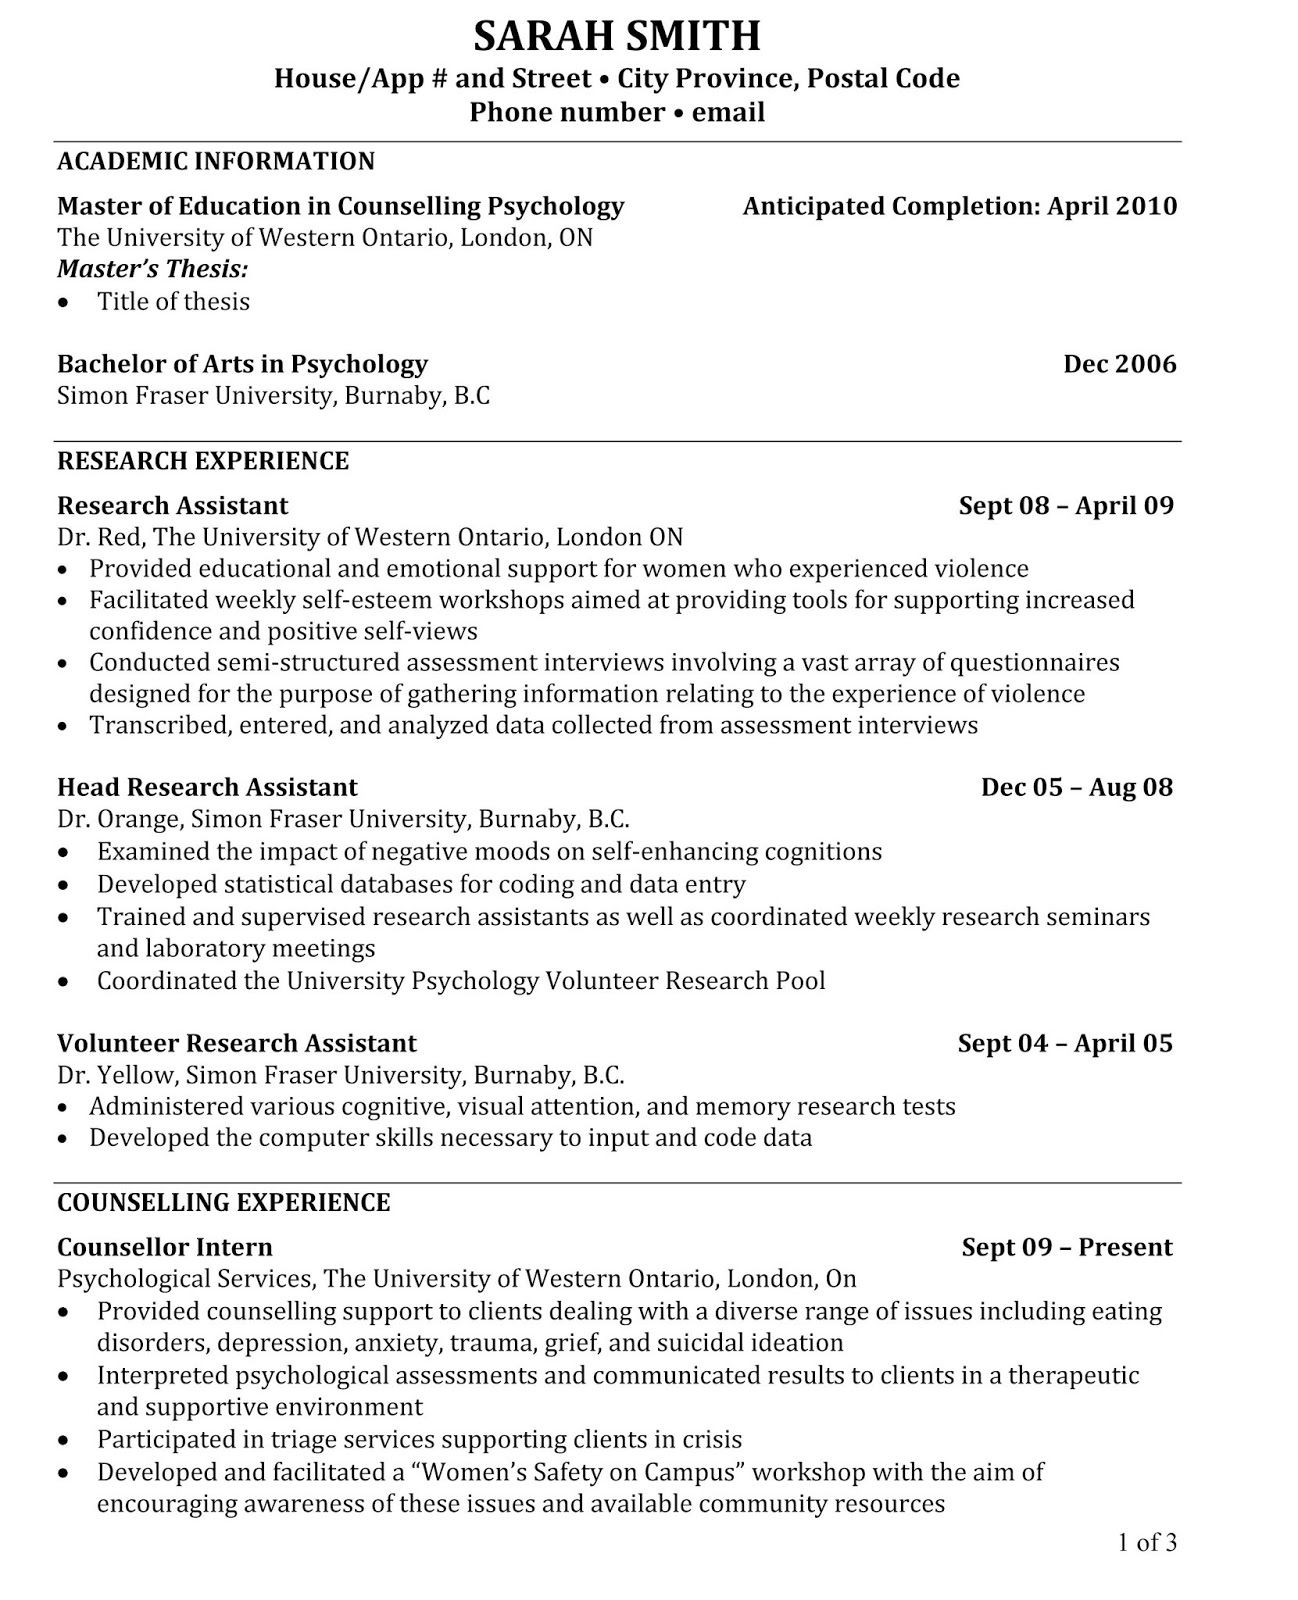 Academic resume sample, academic resume sample pdf, Academic resume